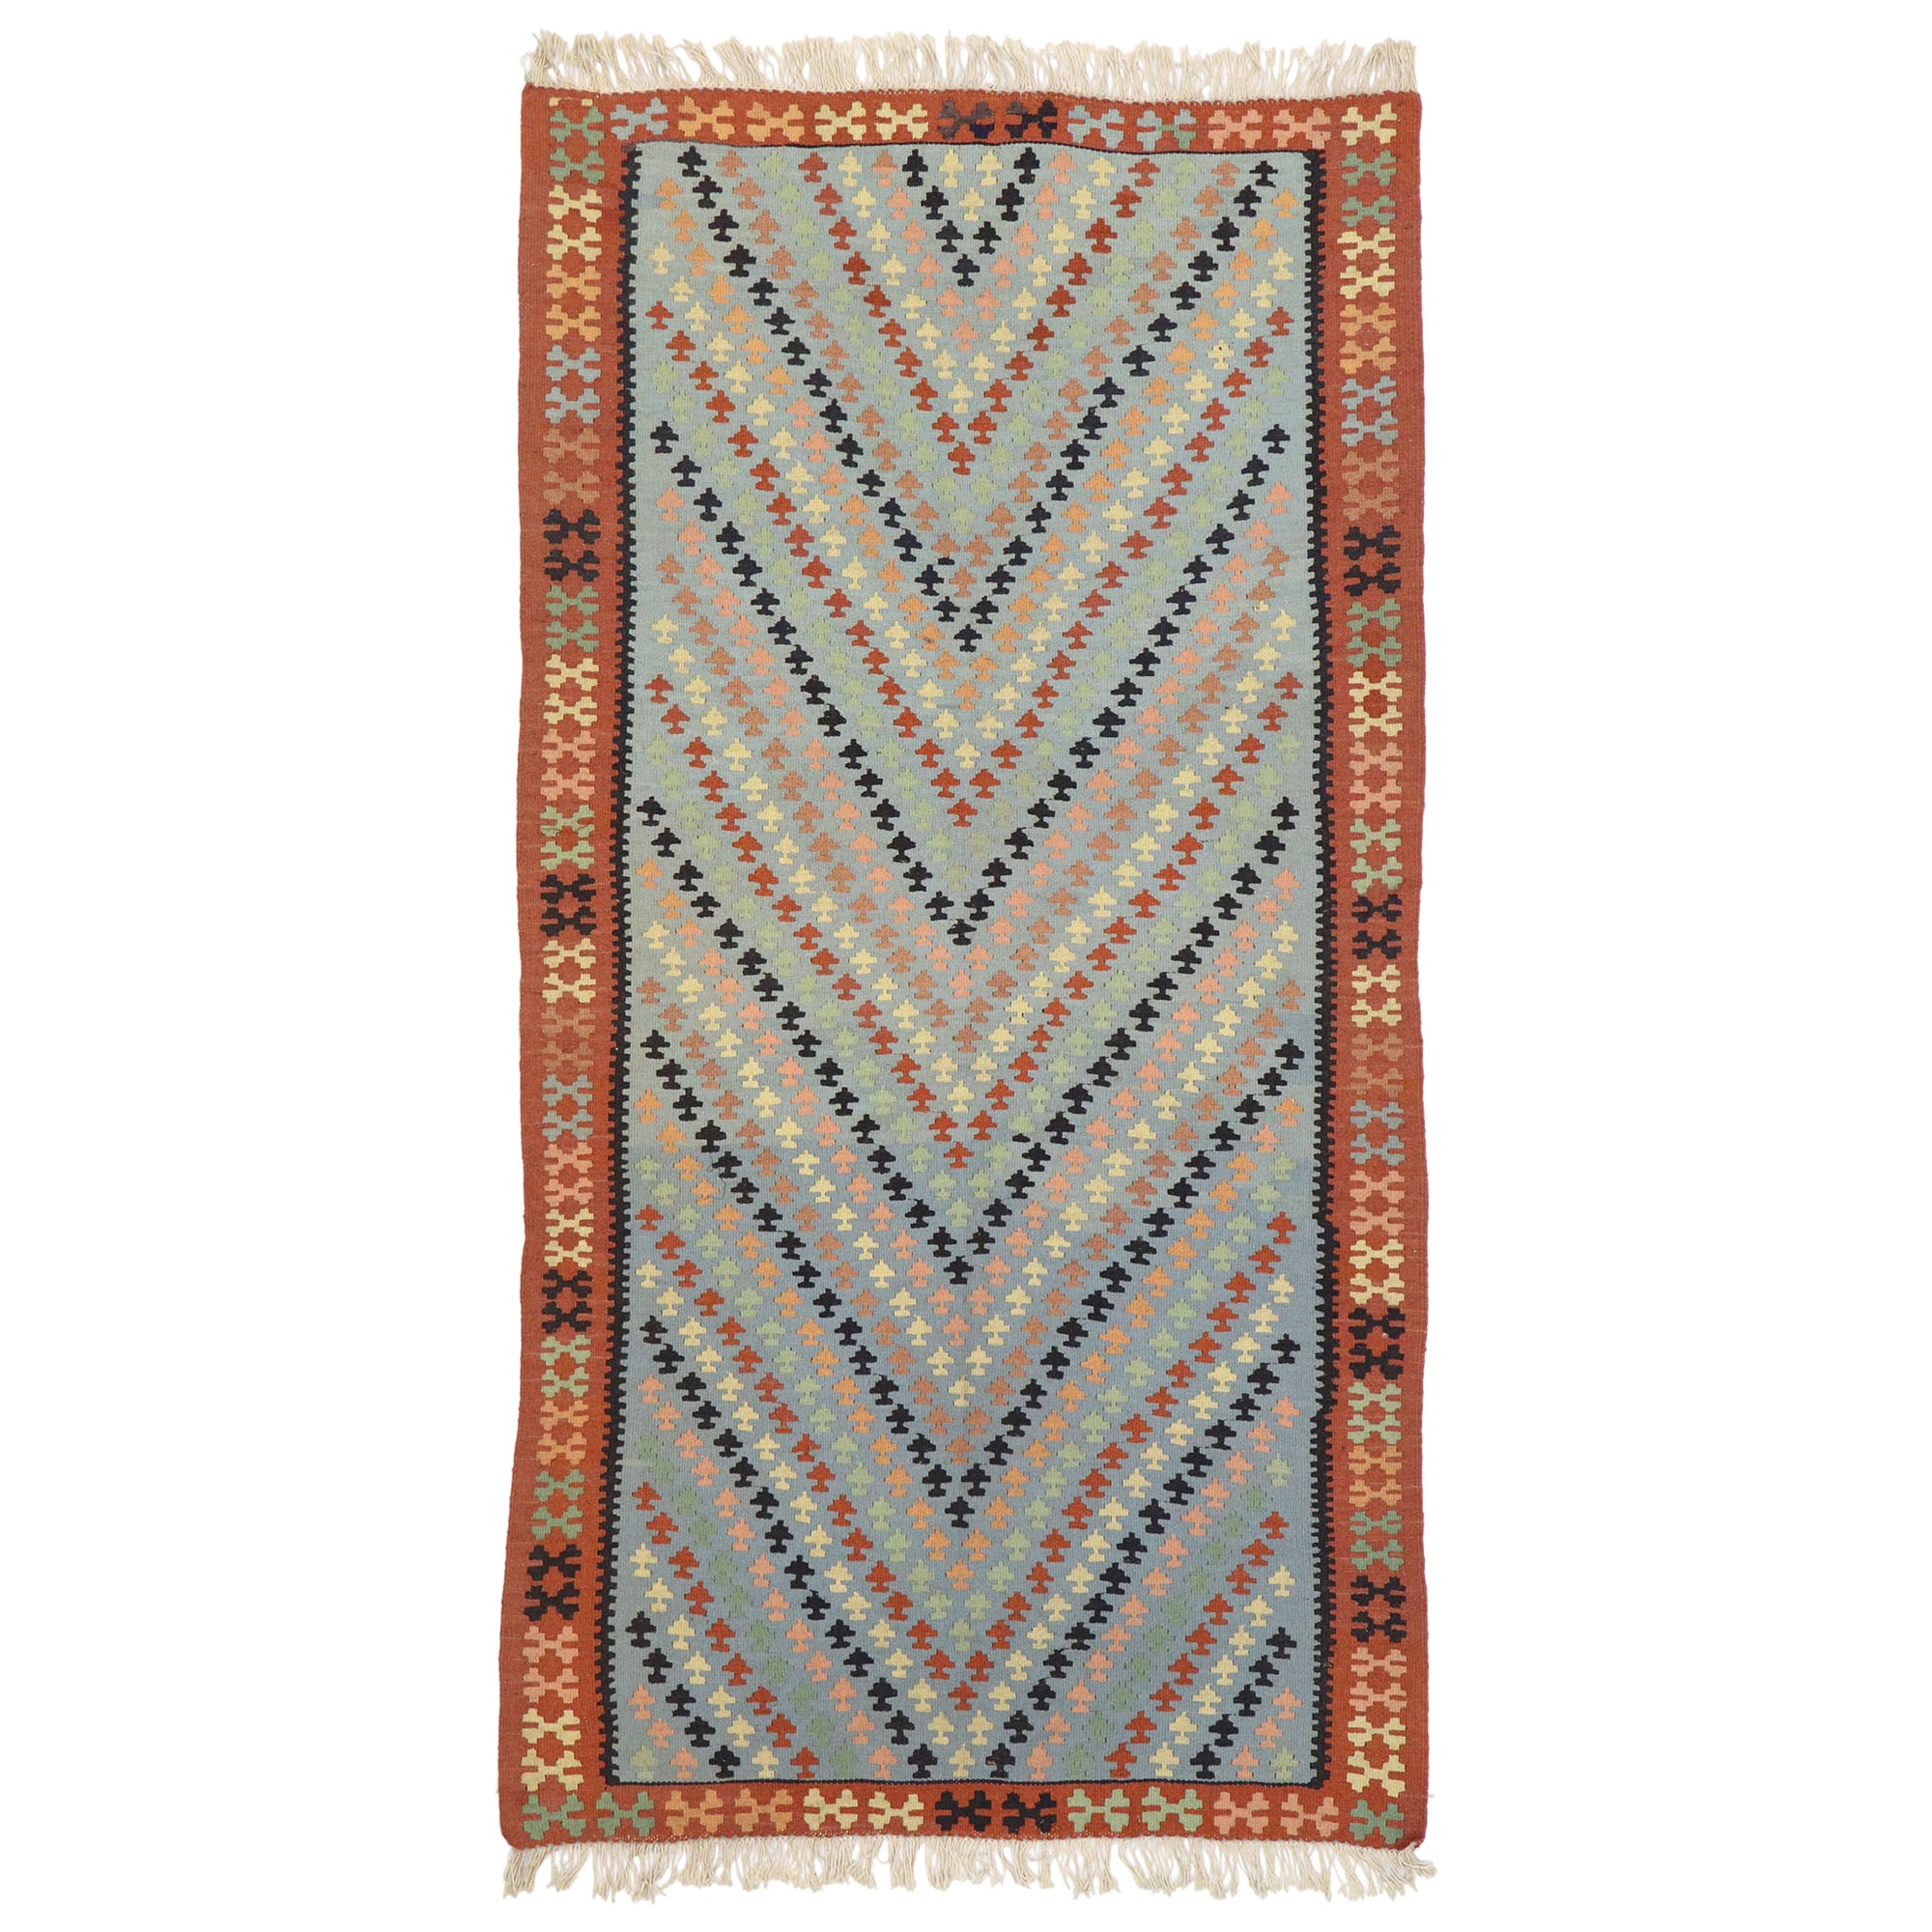 Vintage Persian Shiraz Kilim Rug, Luxury Lodge Meets Southwest Boho Style